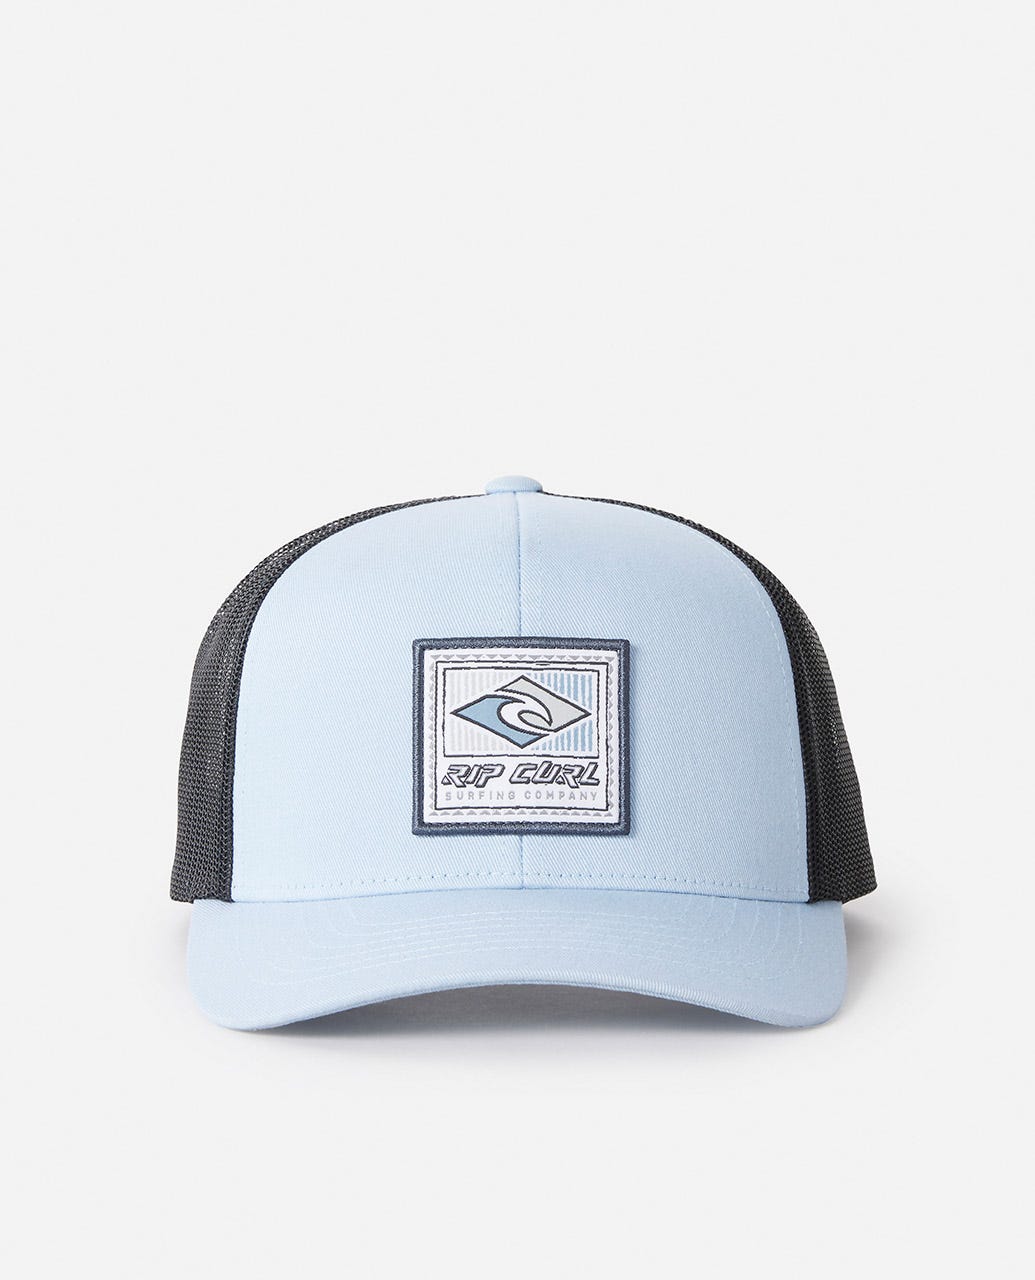 Rip Curl Routine Trucker Hat - dusty blue - Sun Diego Boardshop